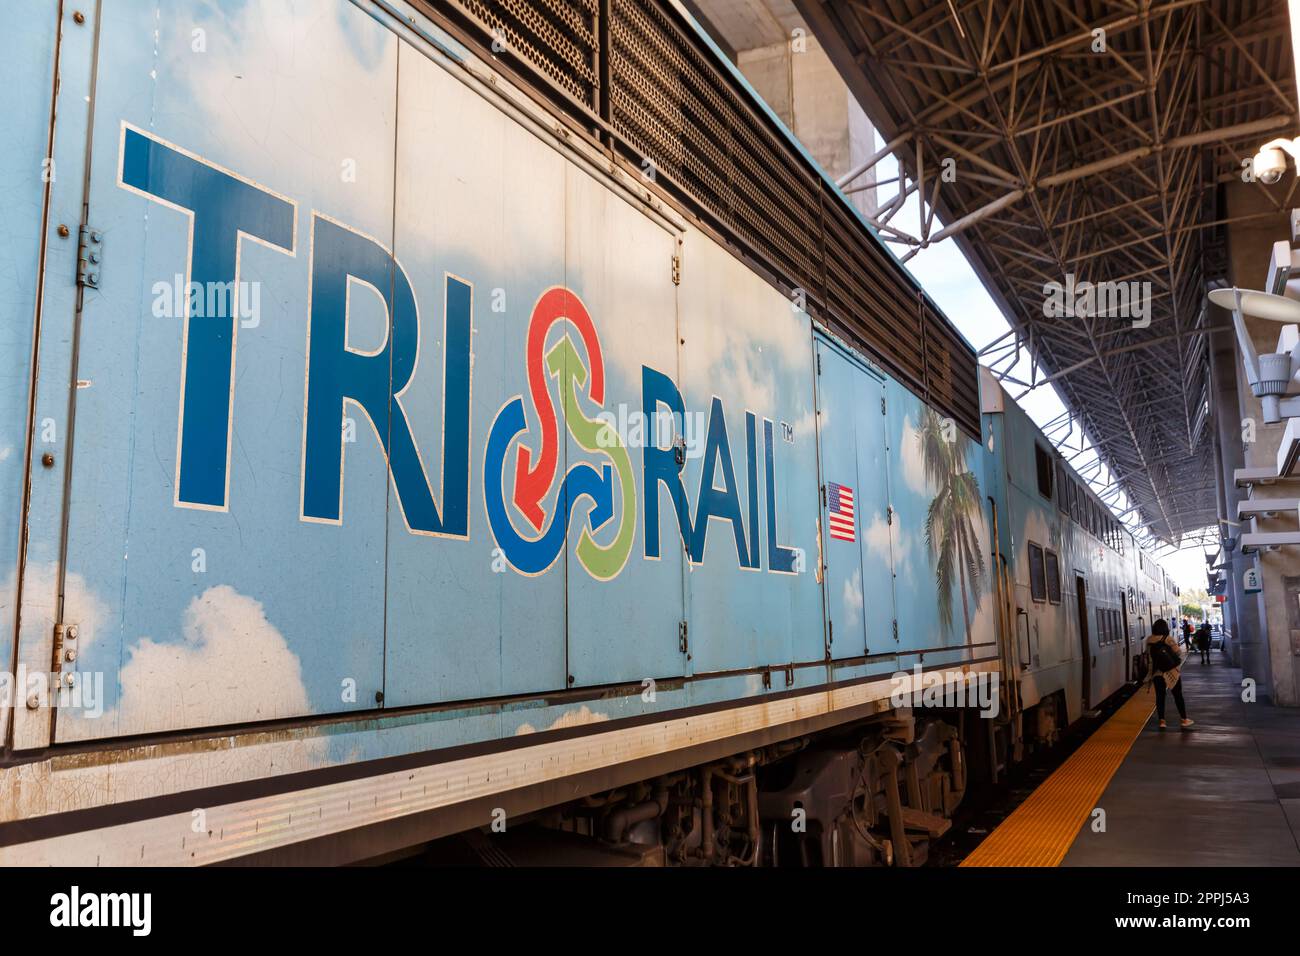 Tri-Rail logo on a commuter rail train at Miami International Airport ...